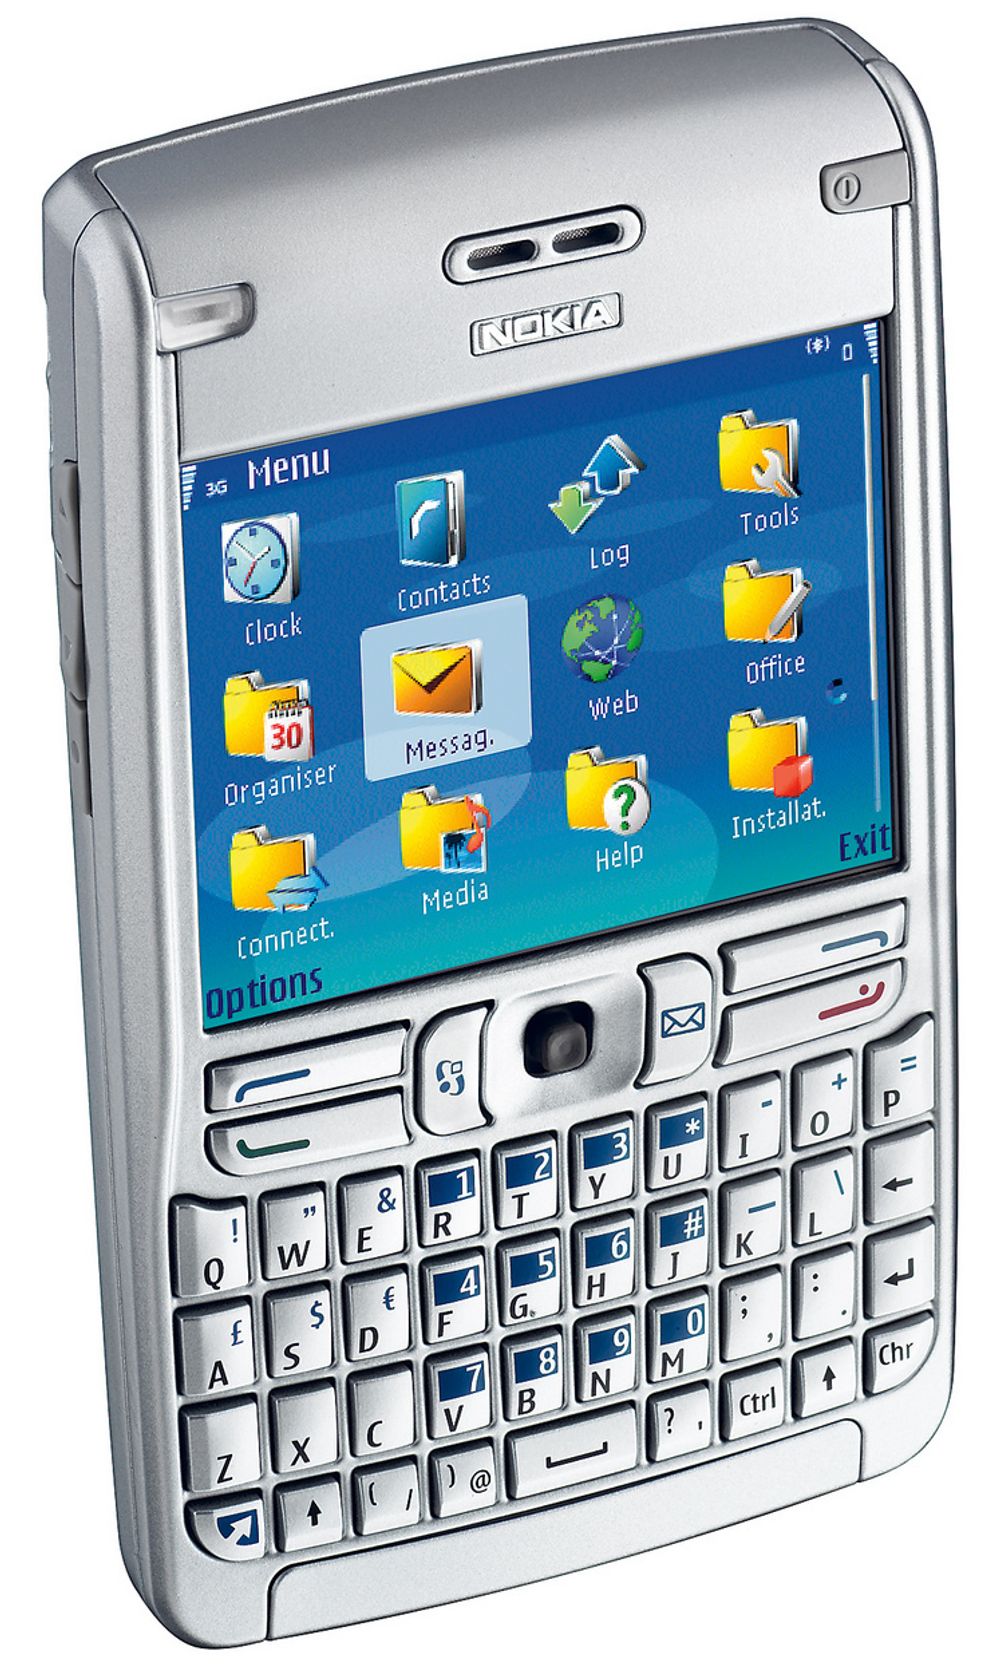 Nokia E61 - flat mobil med stor skjerm - glir lett ned i Armanidressen uten å gi eieren slagside.